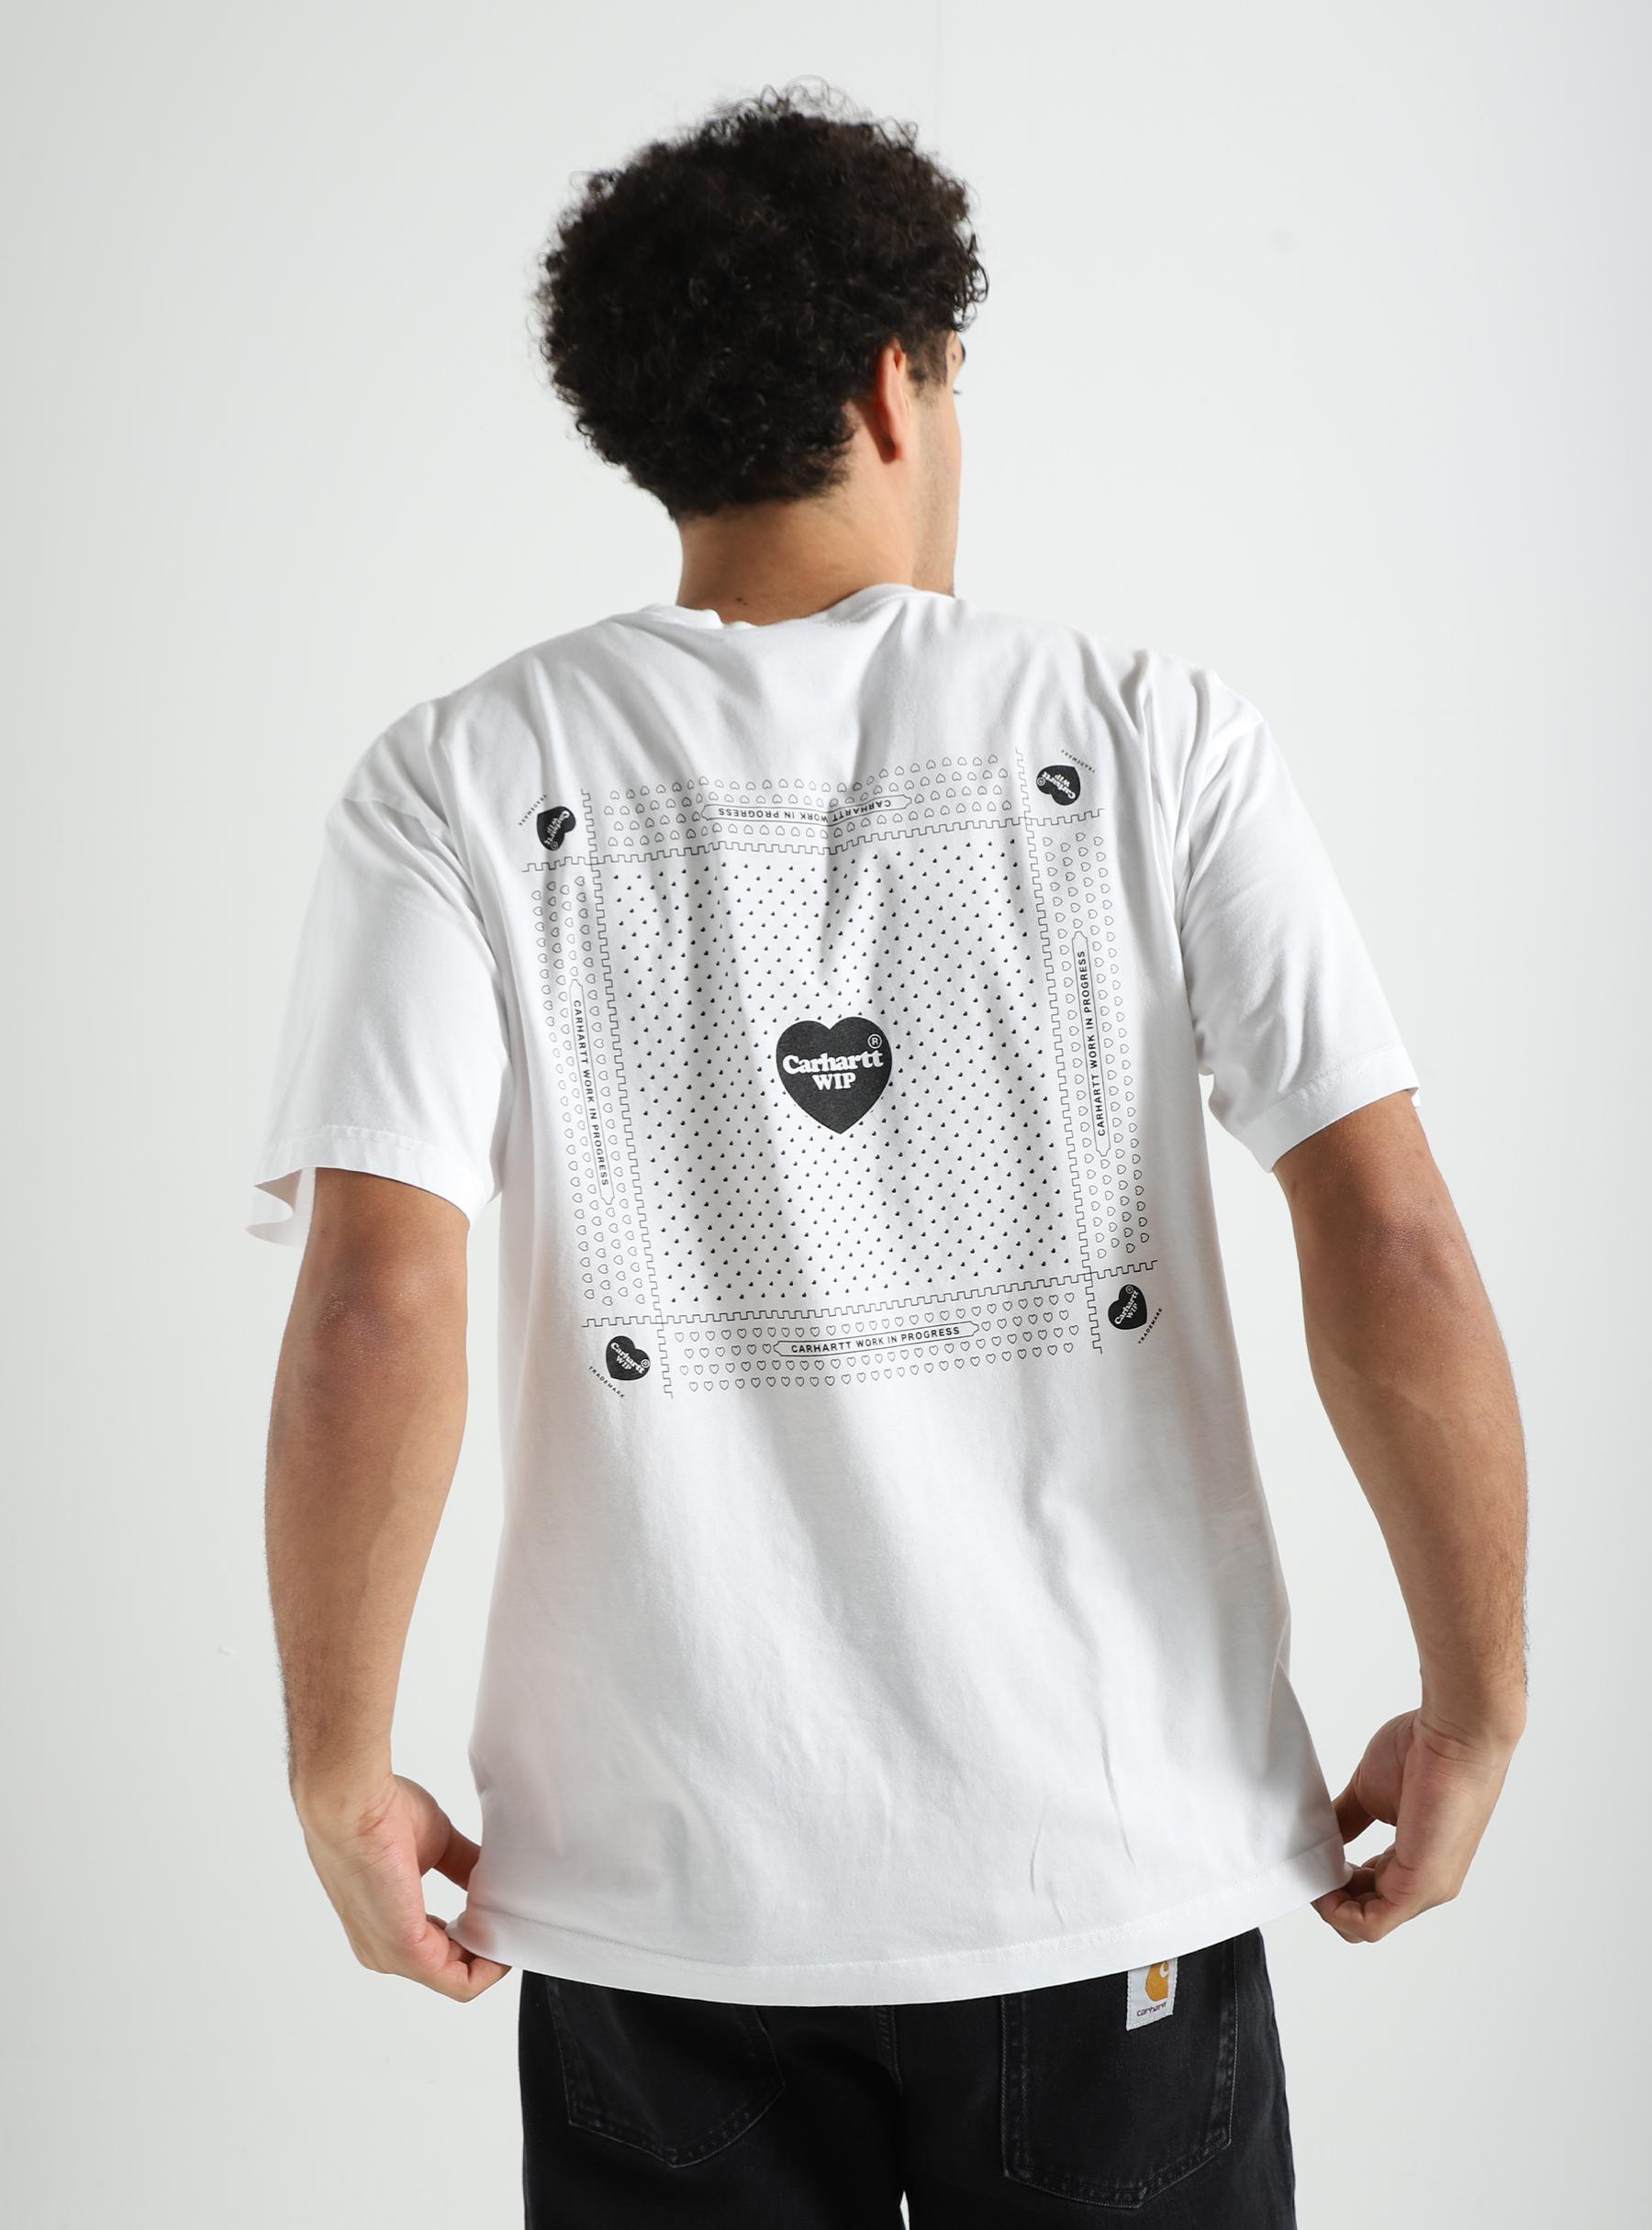 Heart Bandana T-Shirt White Black Stone Washed I033116-00A06